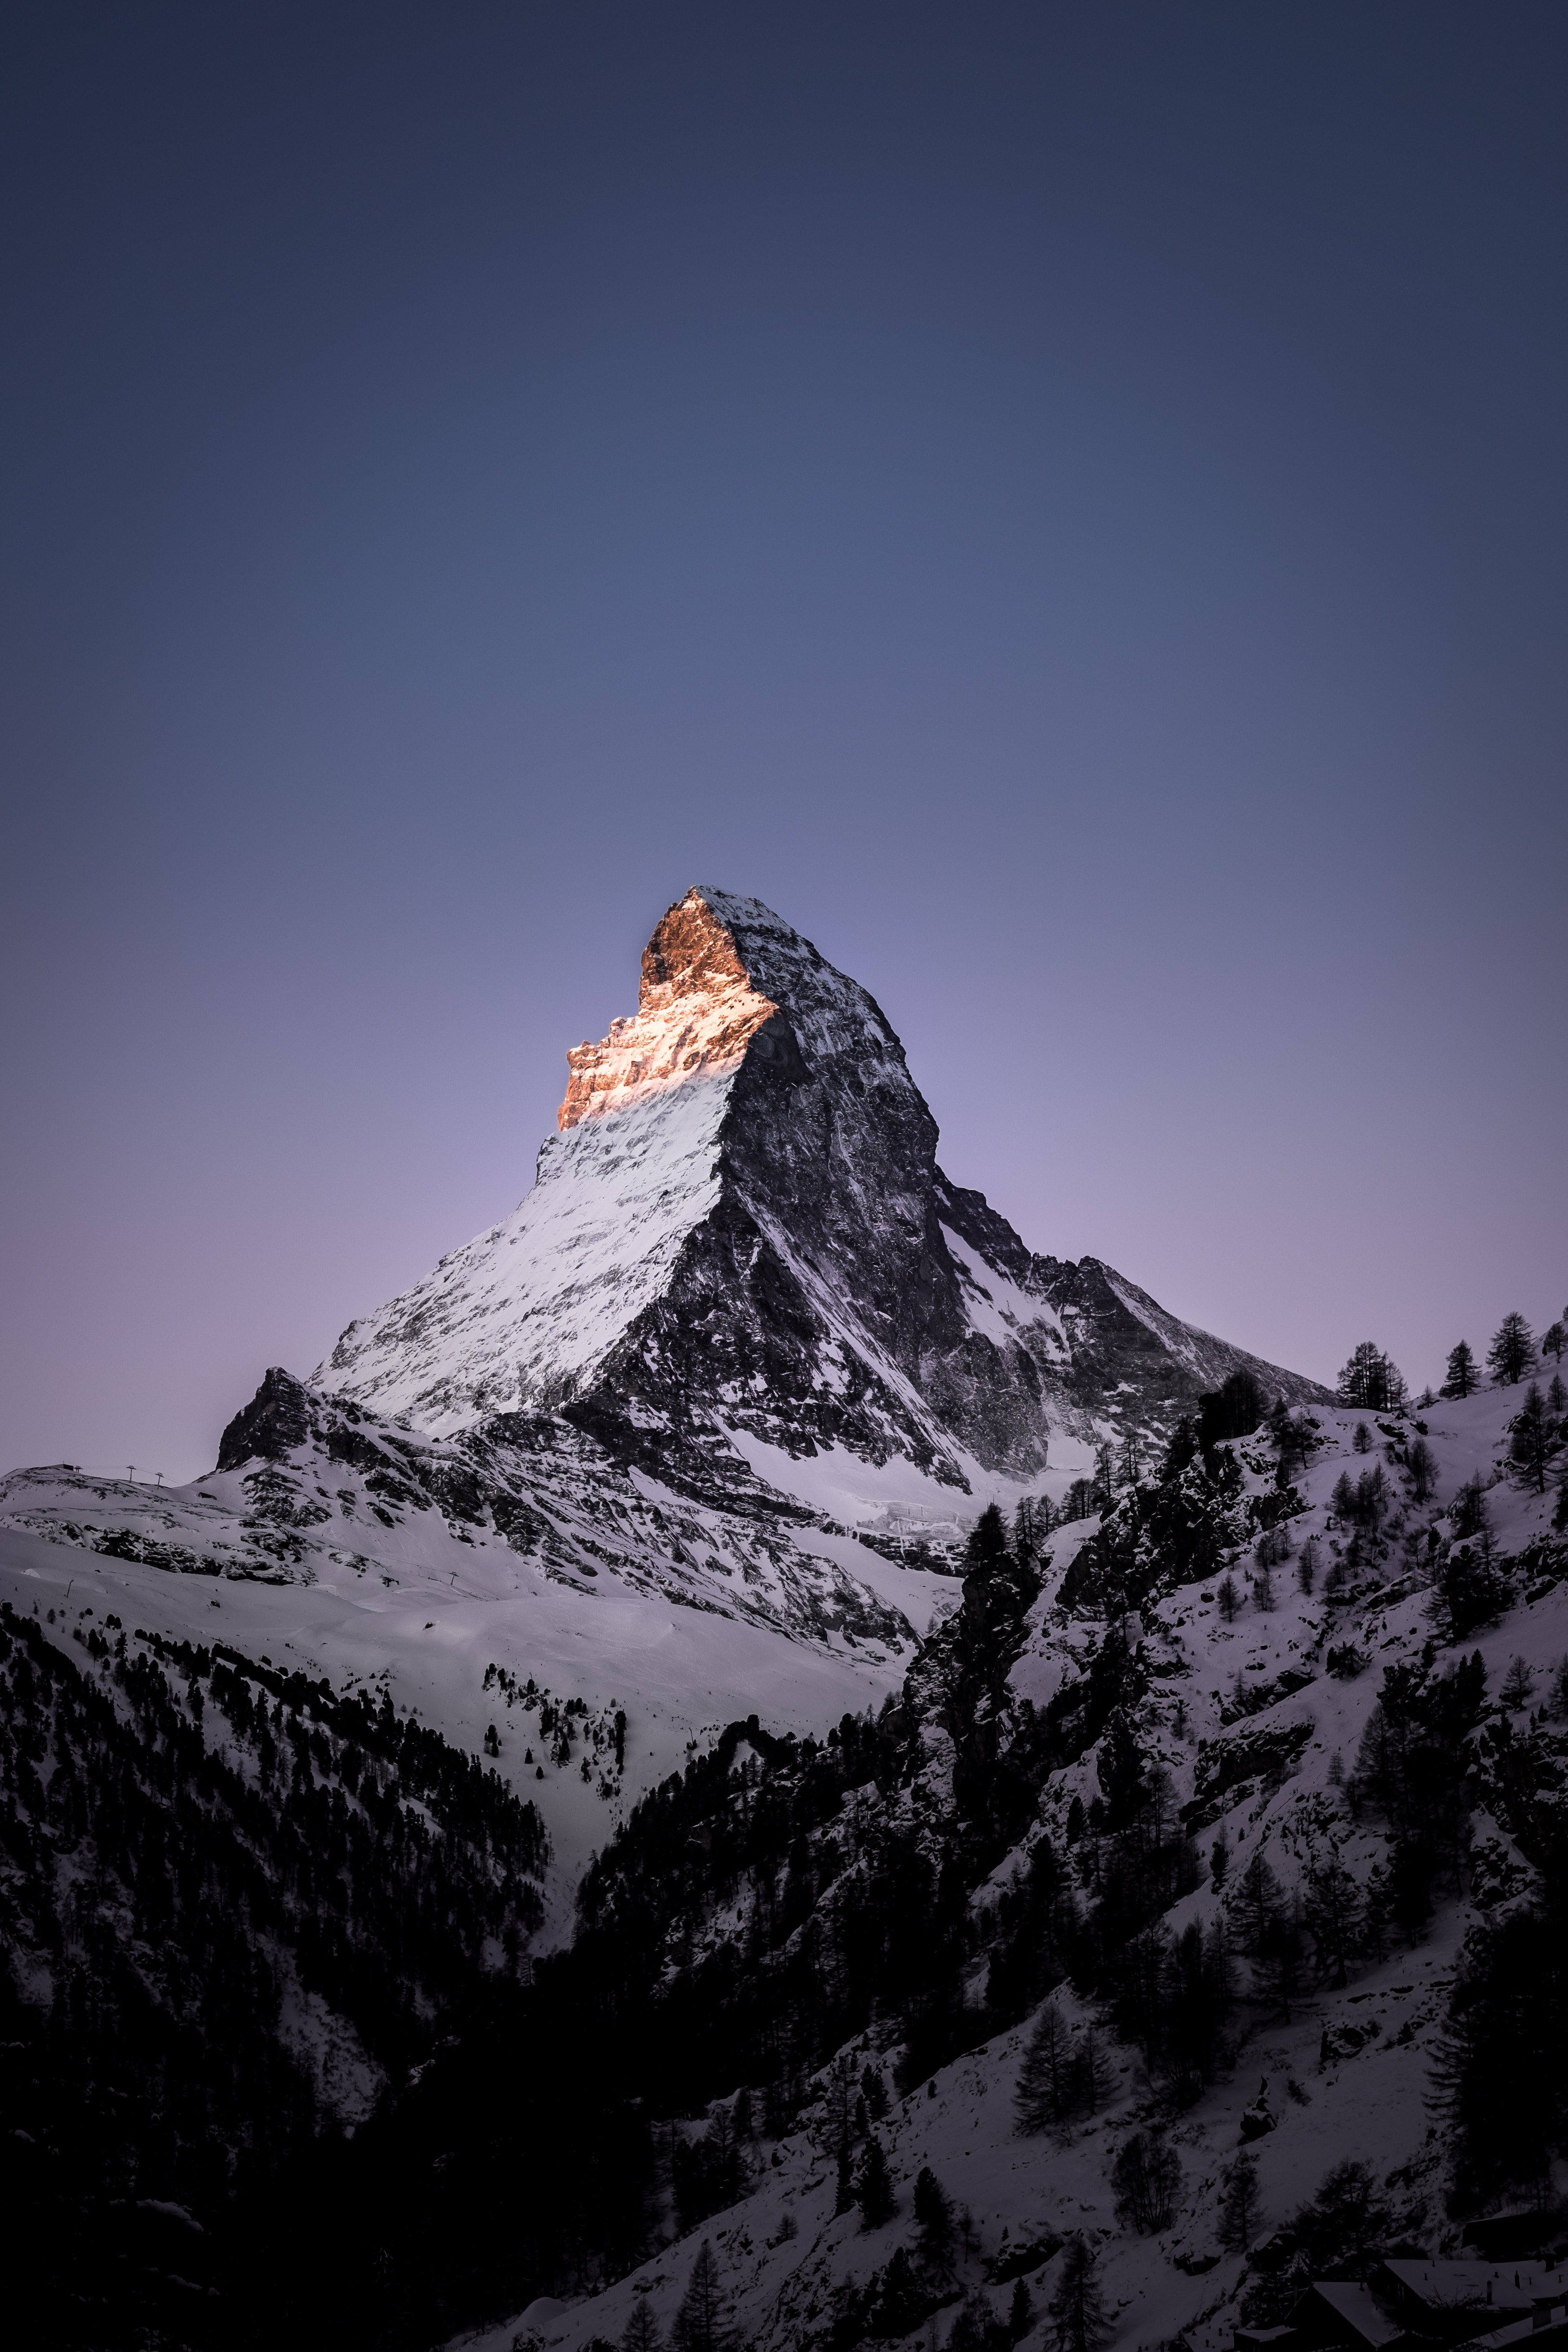 Los mejores fondos de pantalla de Zermatt para la pantalla del teléfono